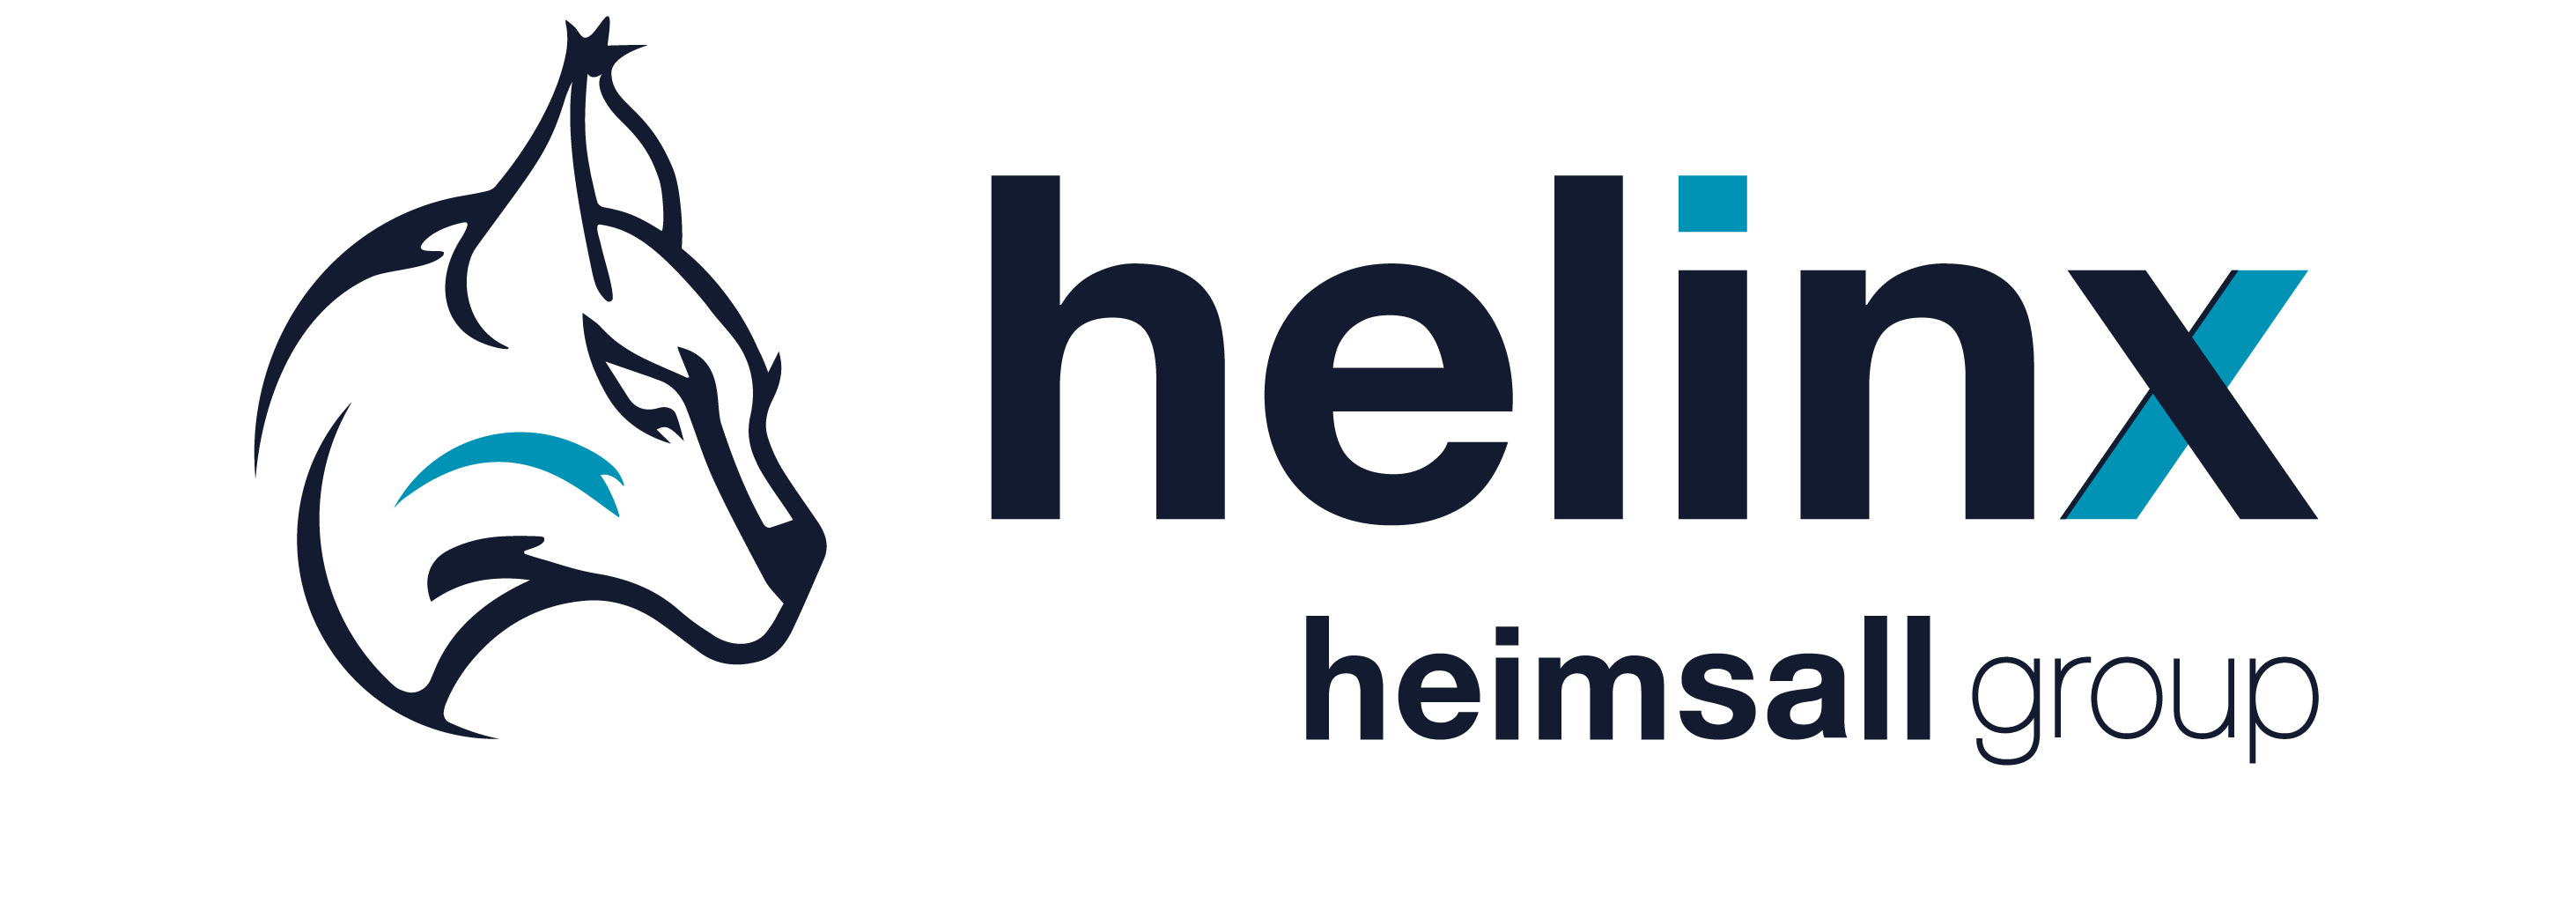 Helinx